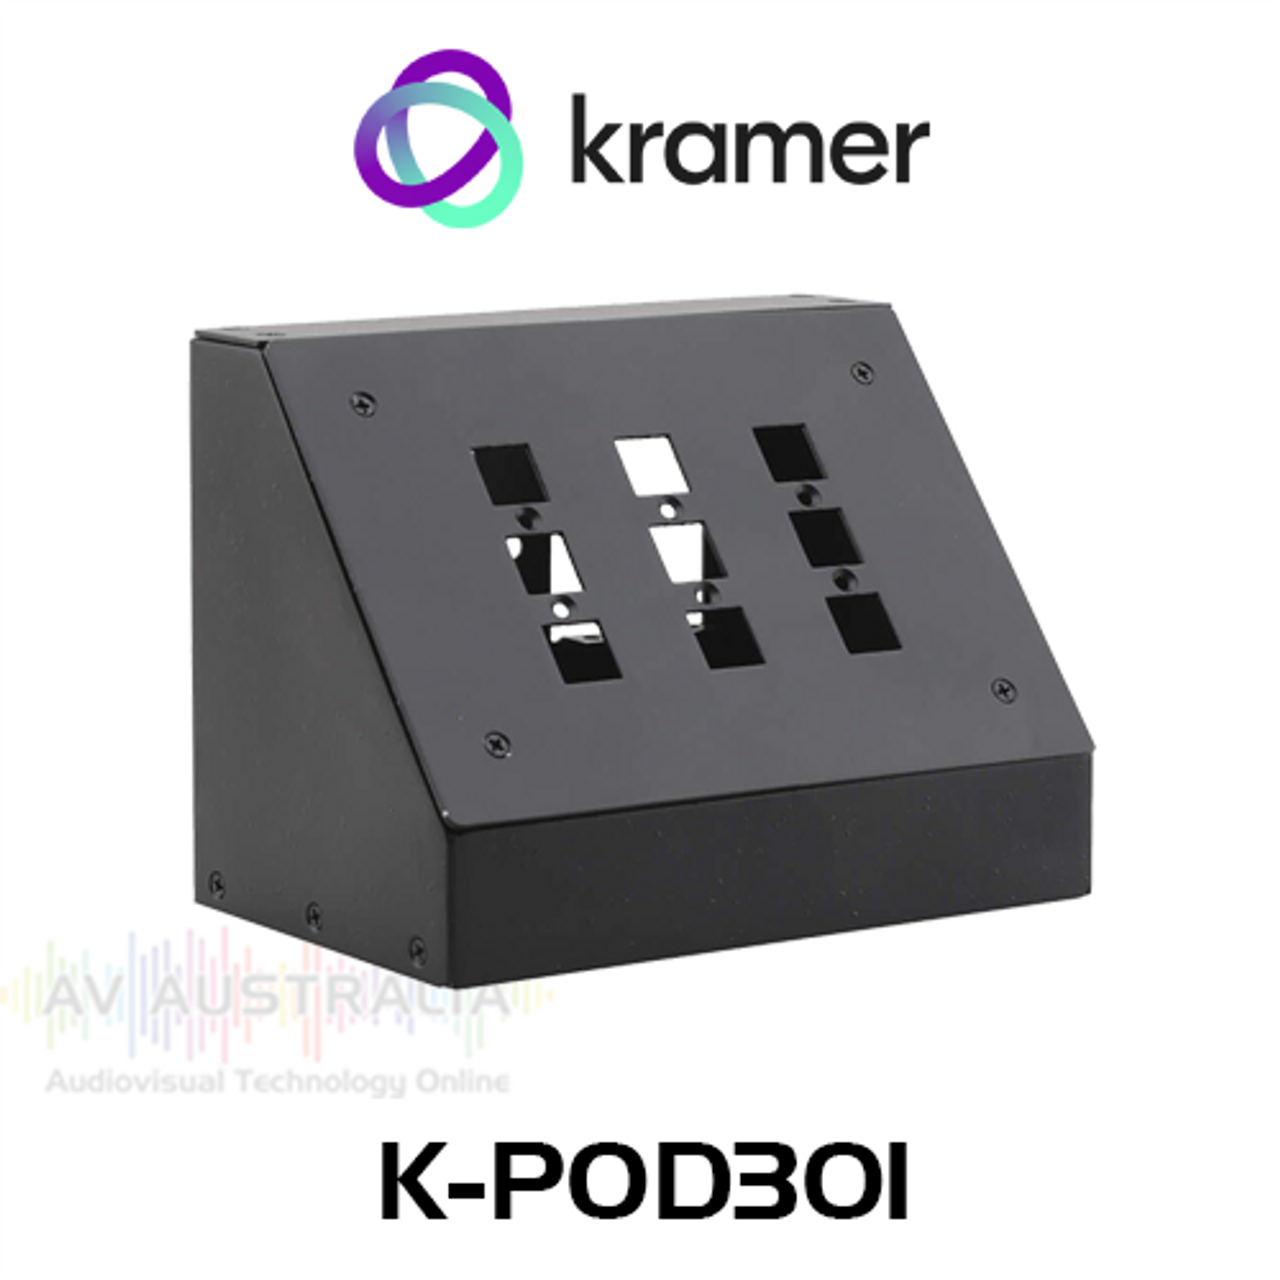 Kramer K-POD301 Podium Table Bus